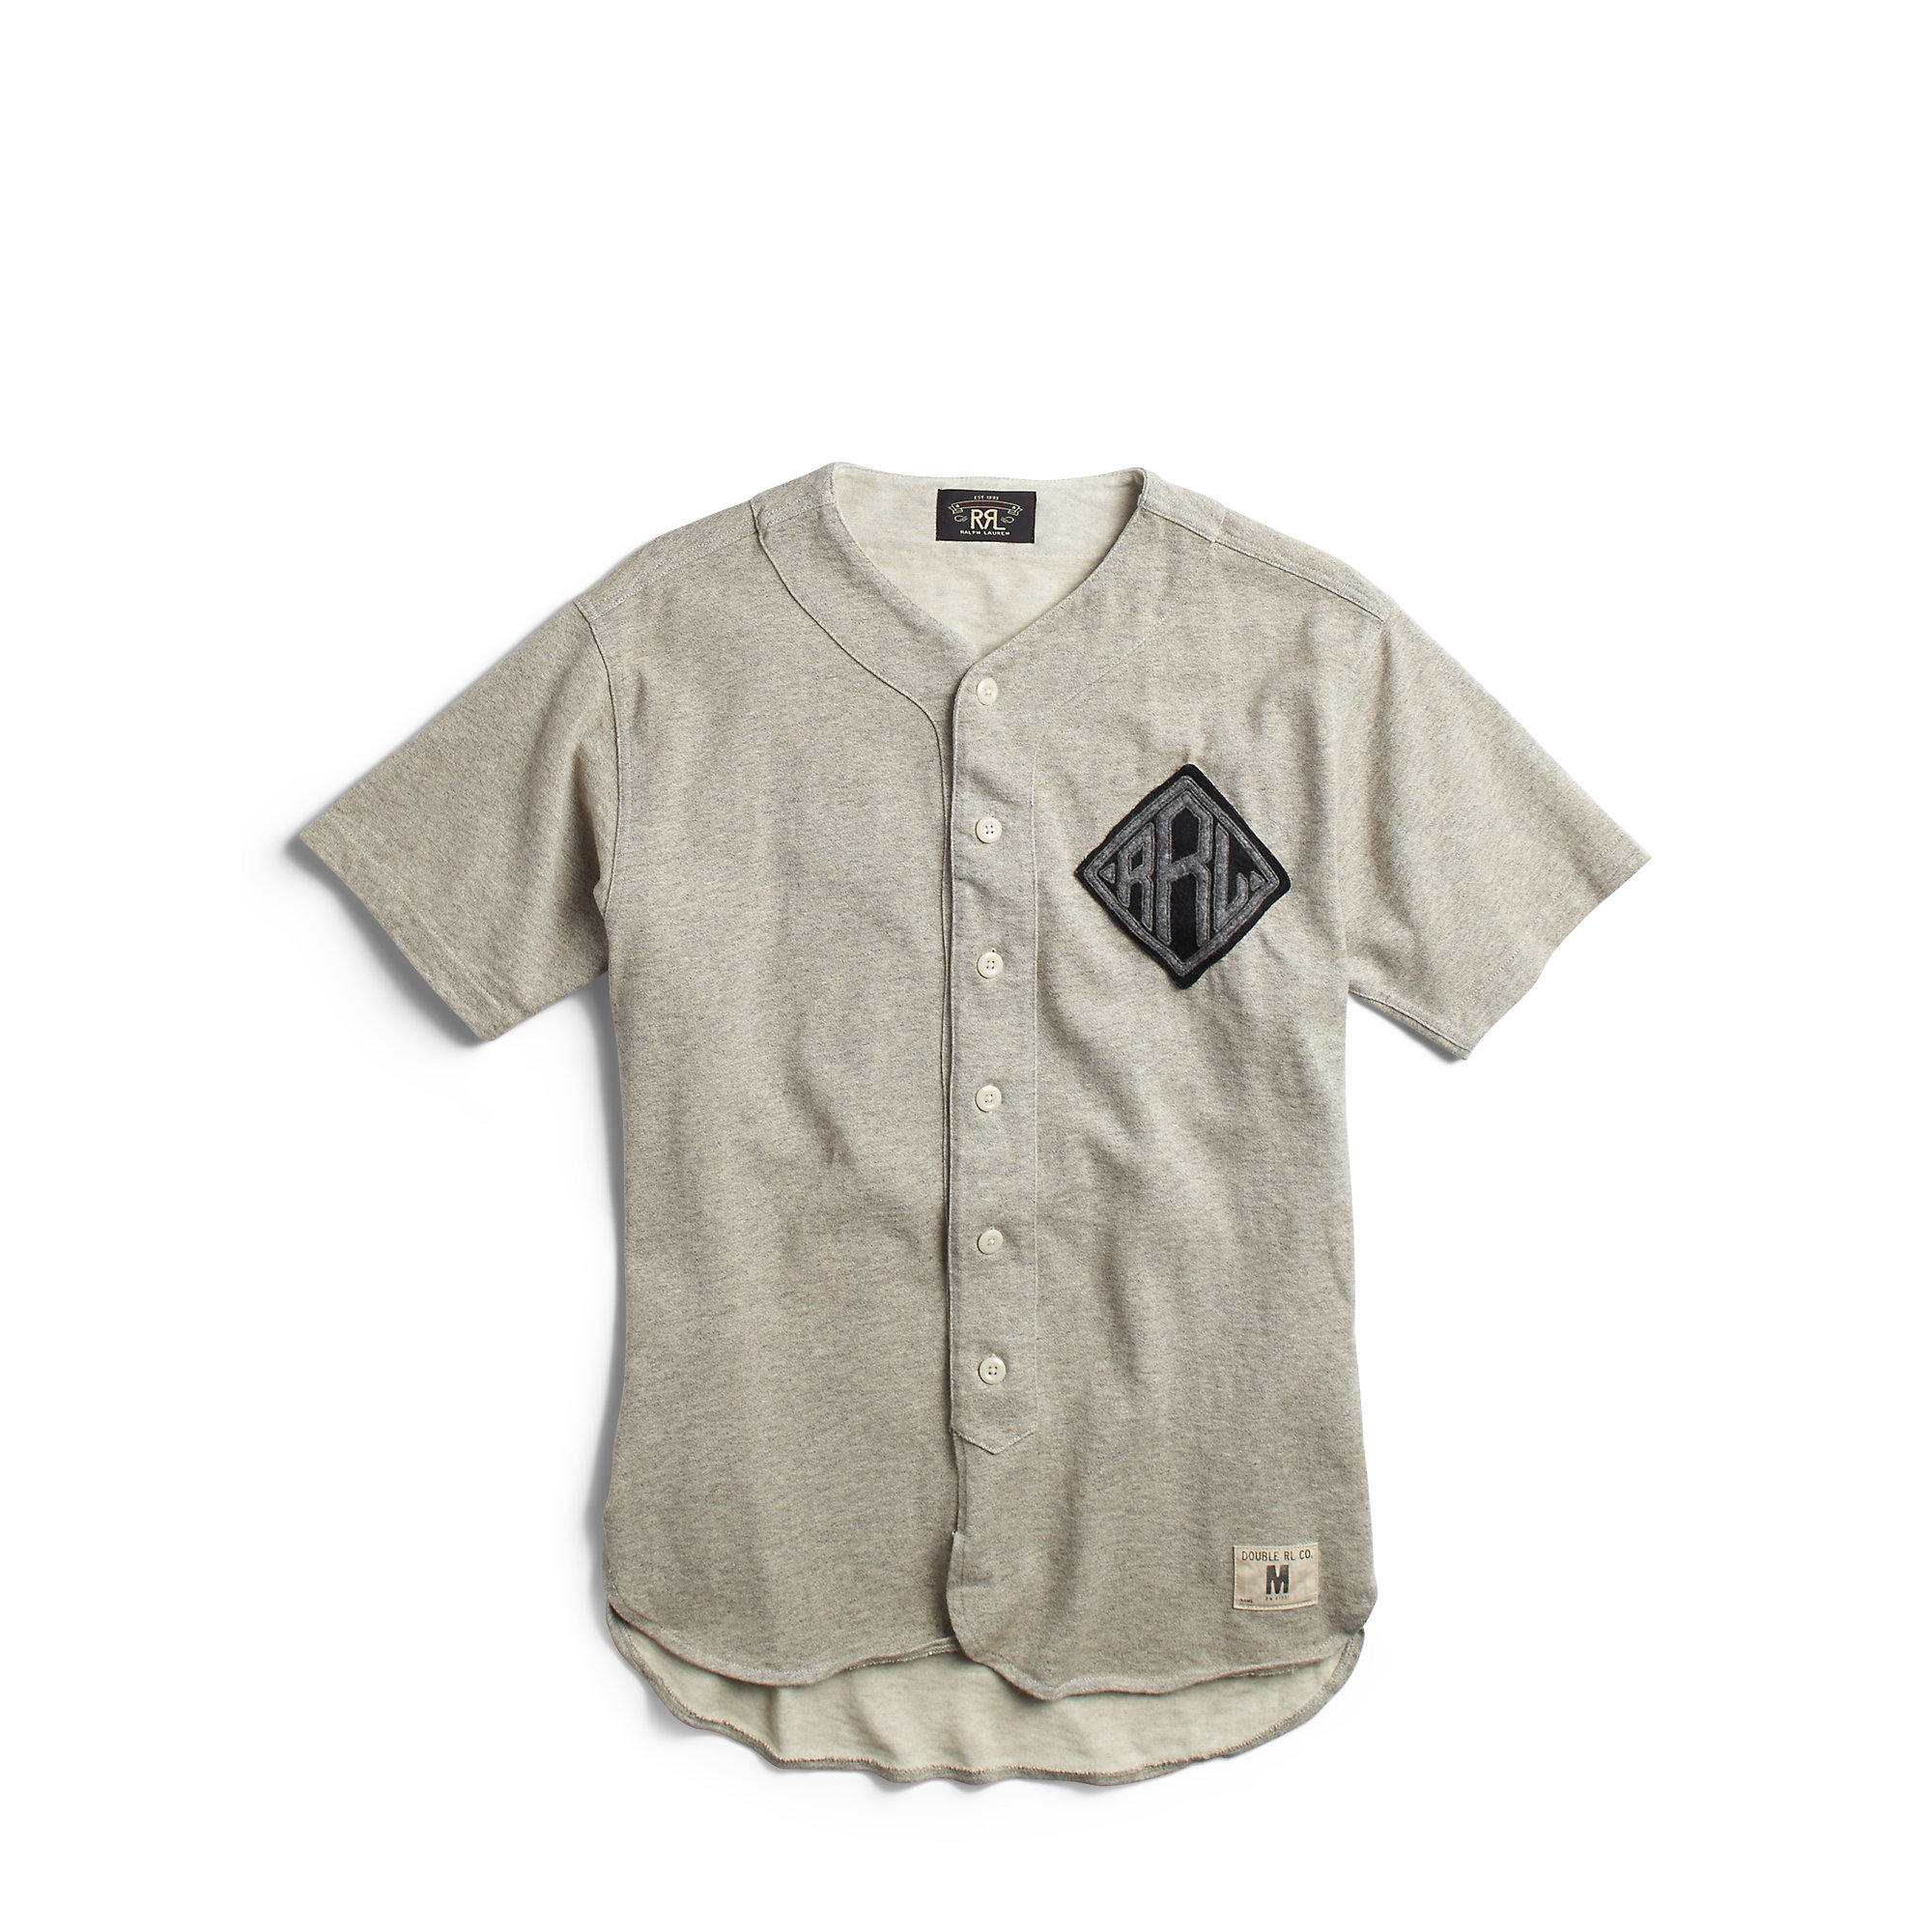 cotton baseball shirts